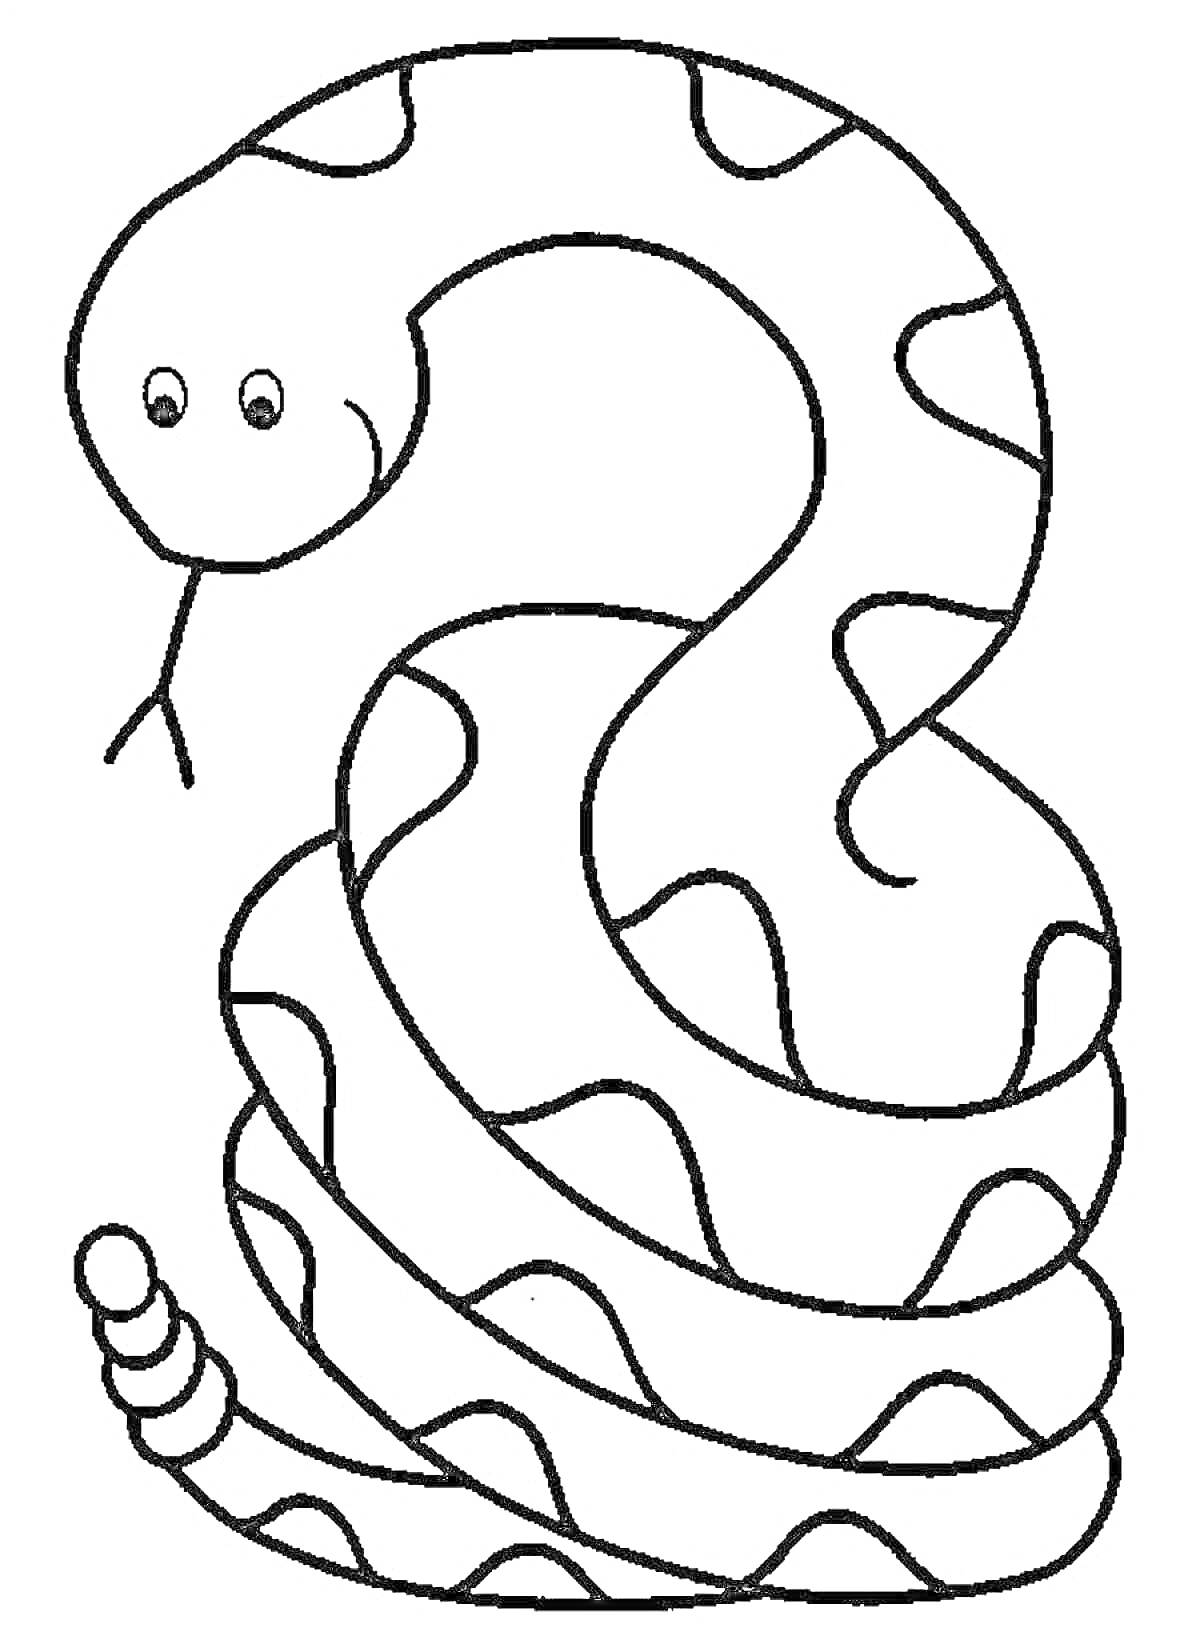 Раскраска Змея с узором и хвостом, готовая к раскрашиванию для детей